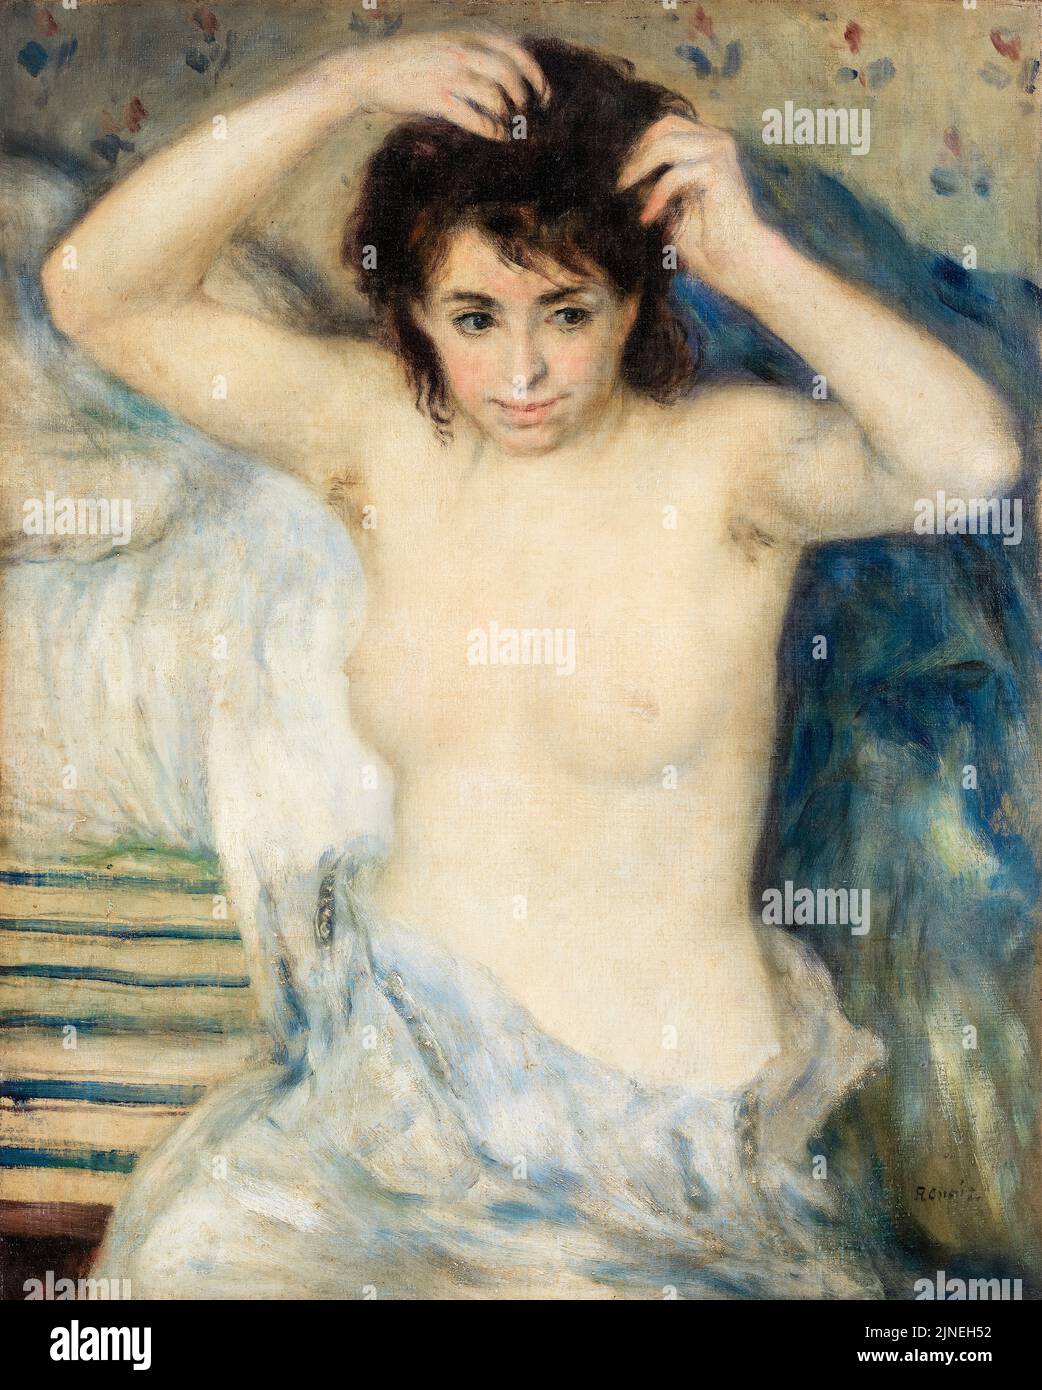 Pierre Auguste Renoir, avant le bain, peinture à l'huile sur toile, vers 1875 Banque D'Images